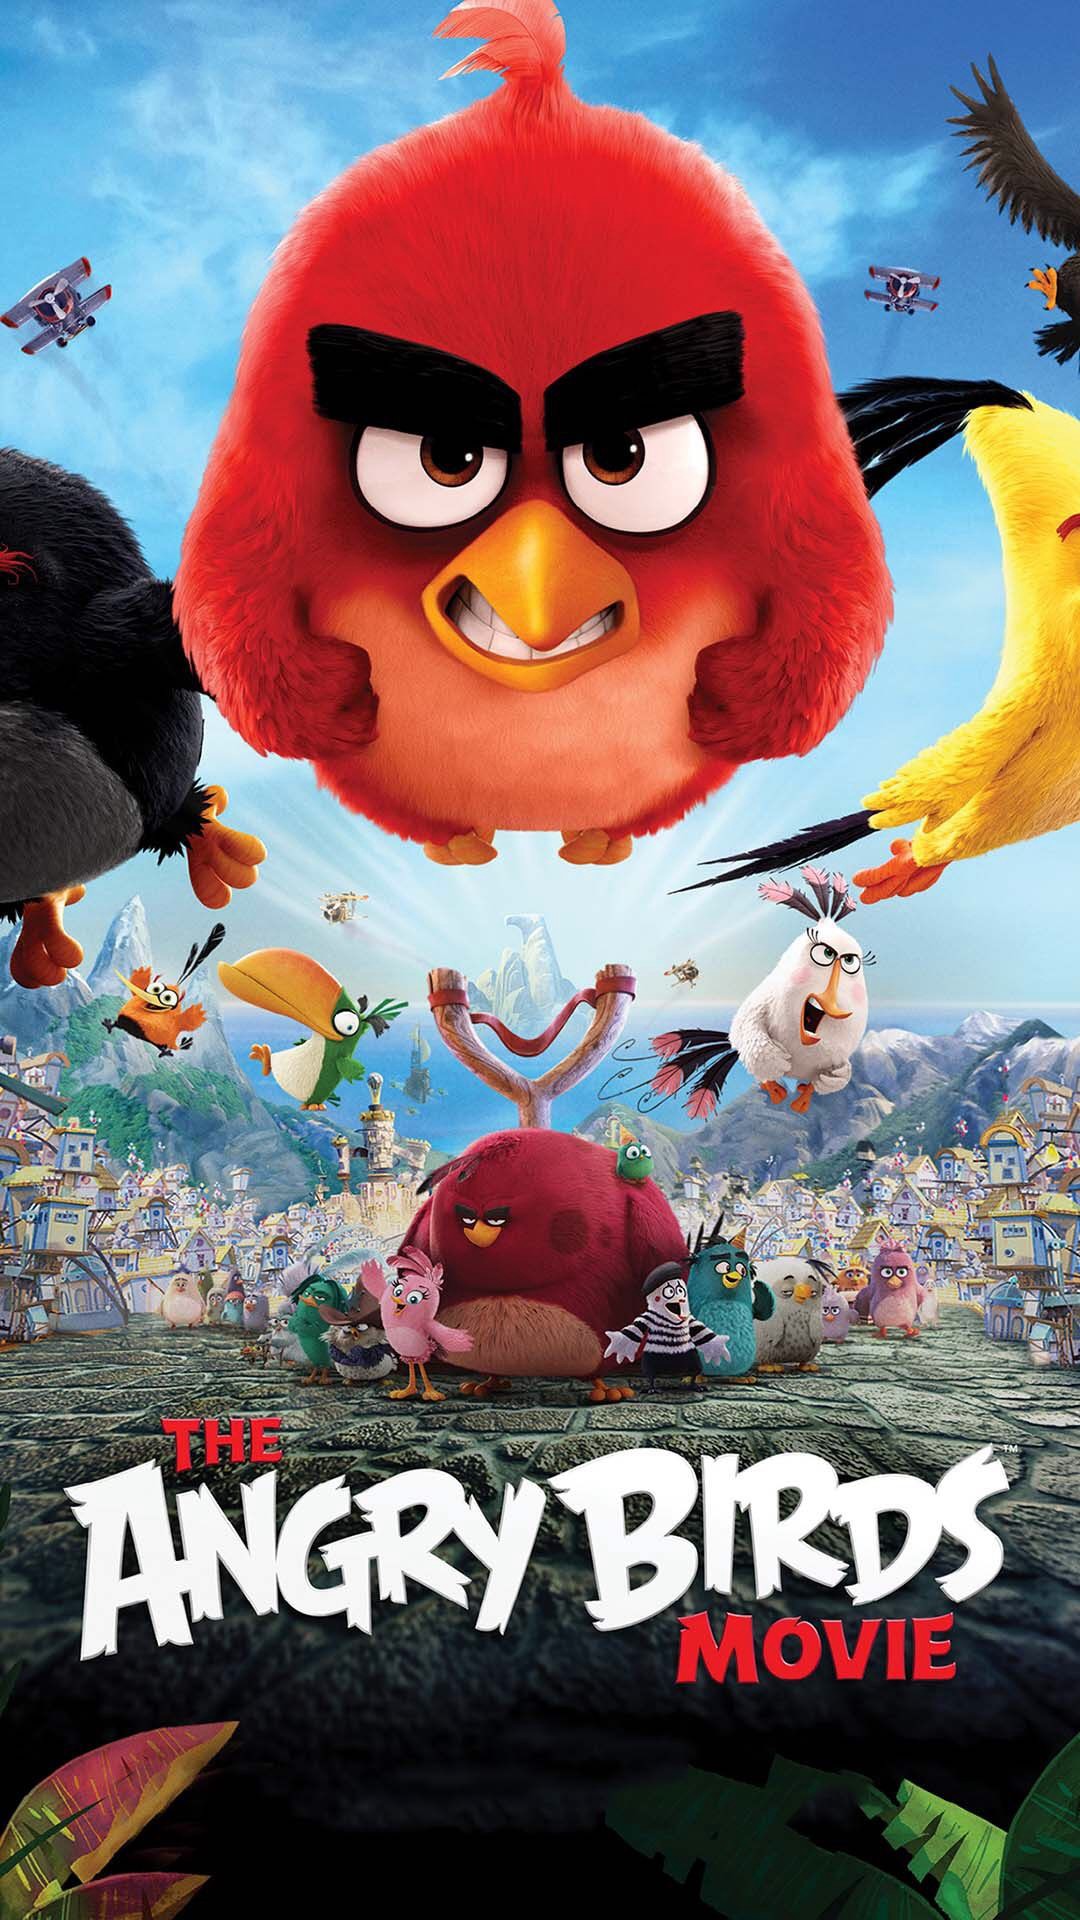 Angry Birds (Bản điện ảnh) 2016